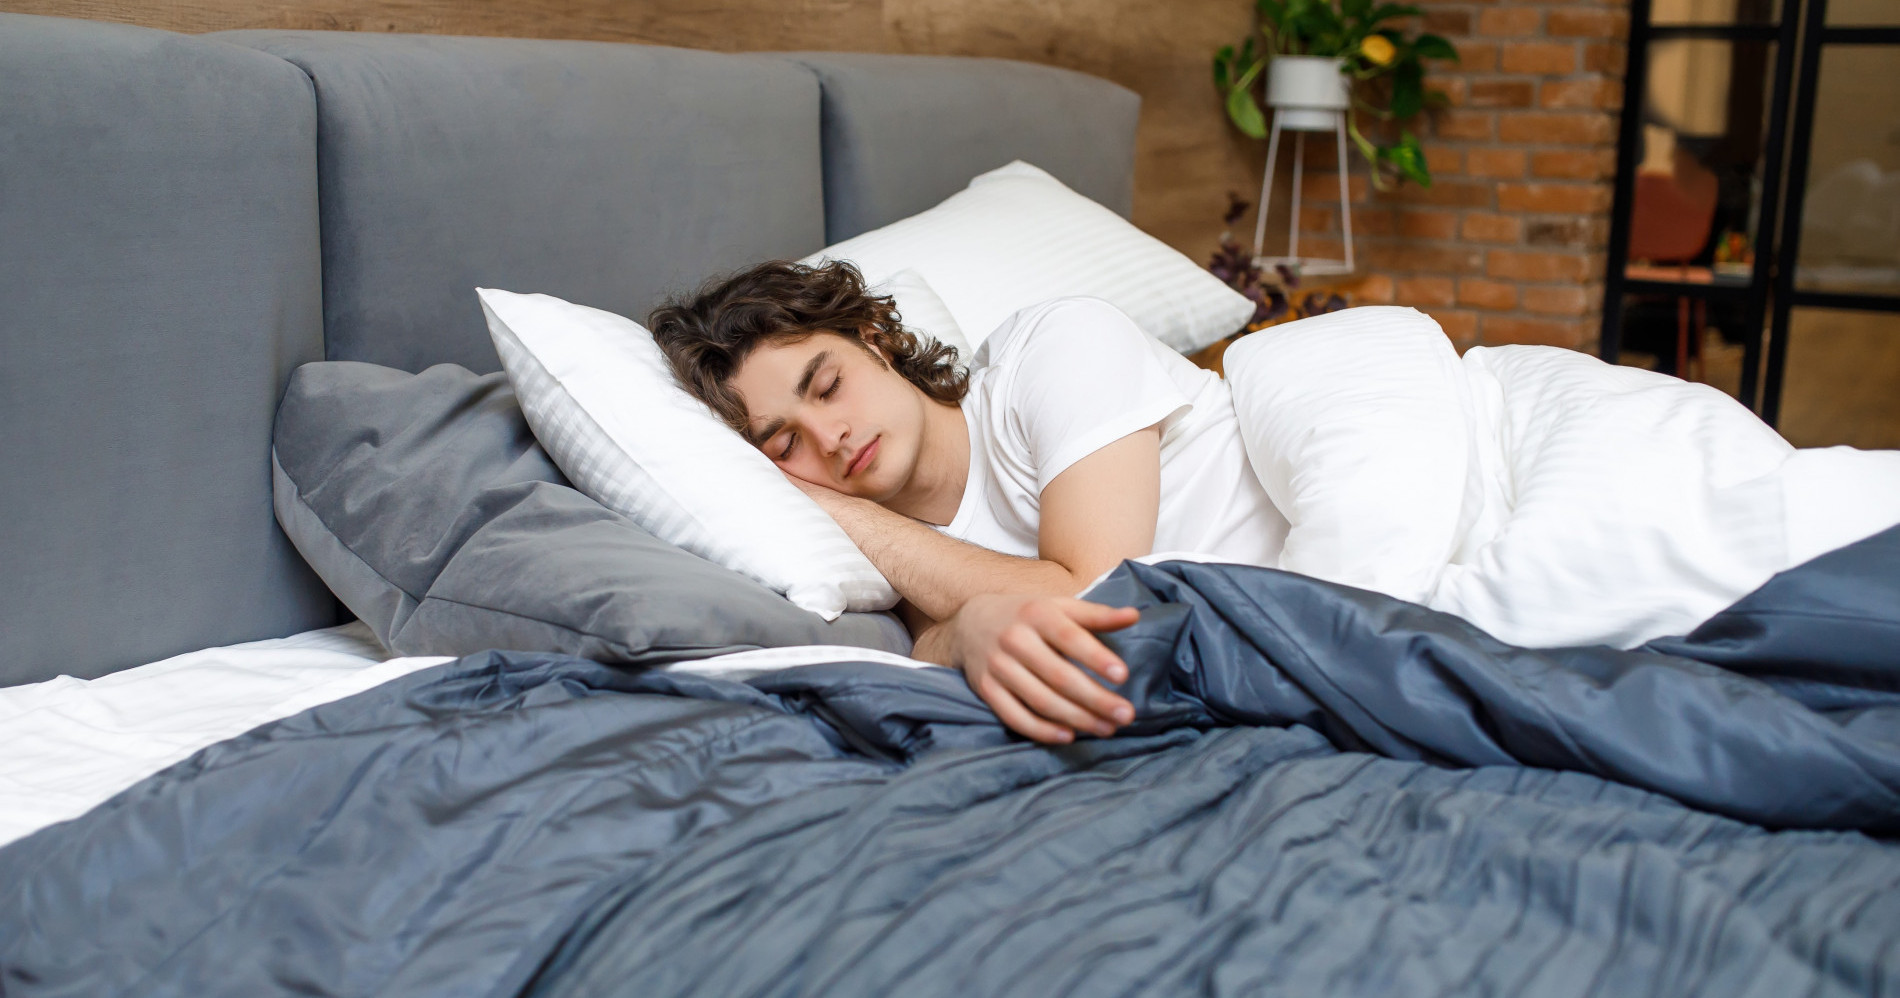 Manfaat tidur siang bagi kesehatan (sumber gambar: freepik)